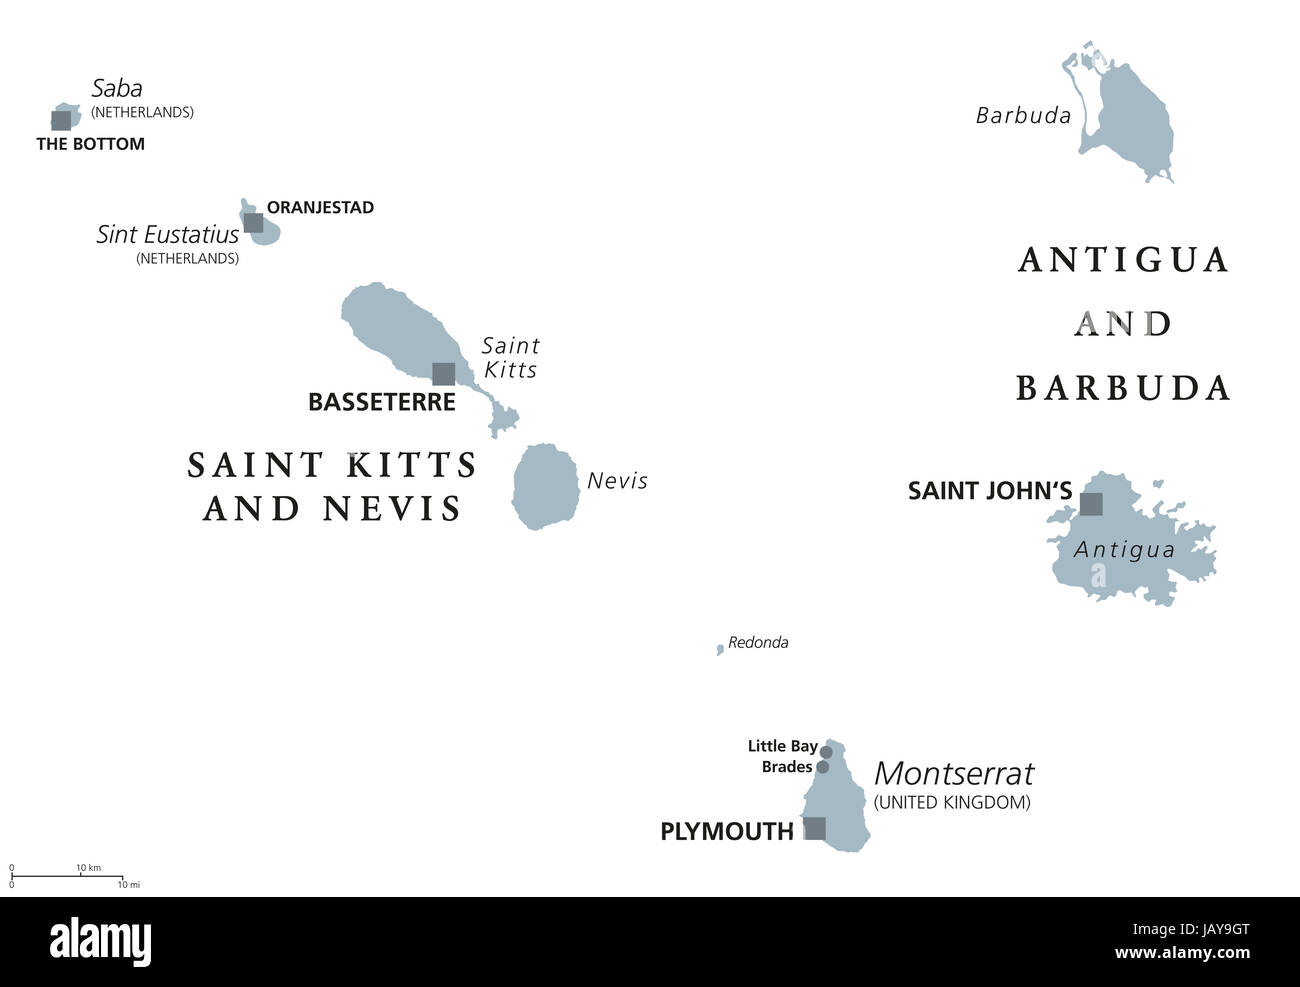 St. Kitts und Nevis, Antigua und Barbuda, Montserrat, Saba und Sint Eustatius politische Karte. Karibische Inseln und Teile der kleinen Antillen. Stockfoto